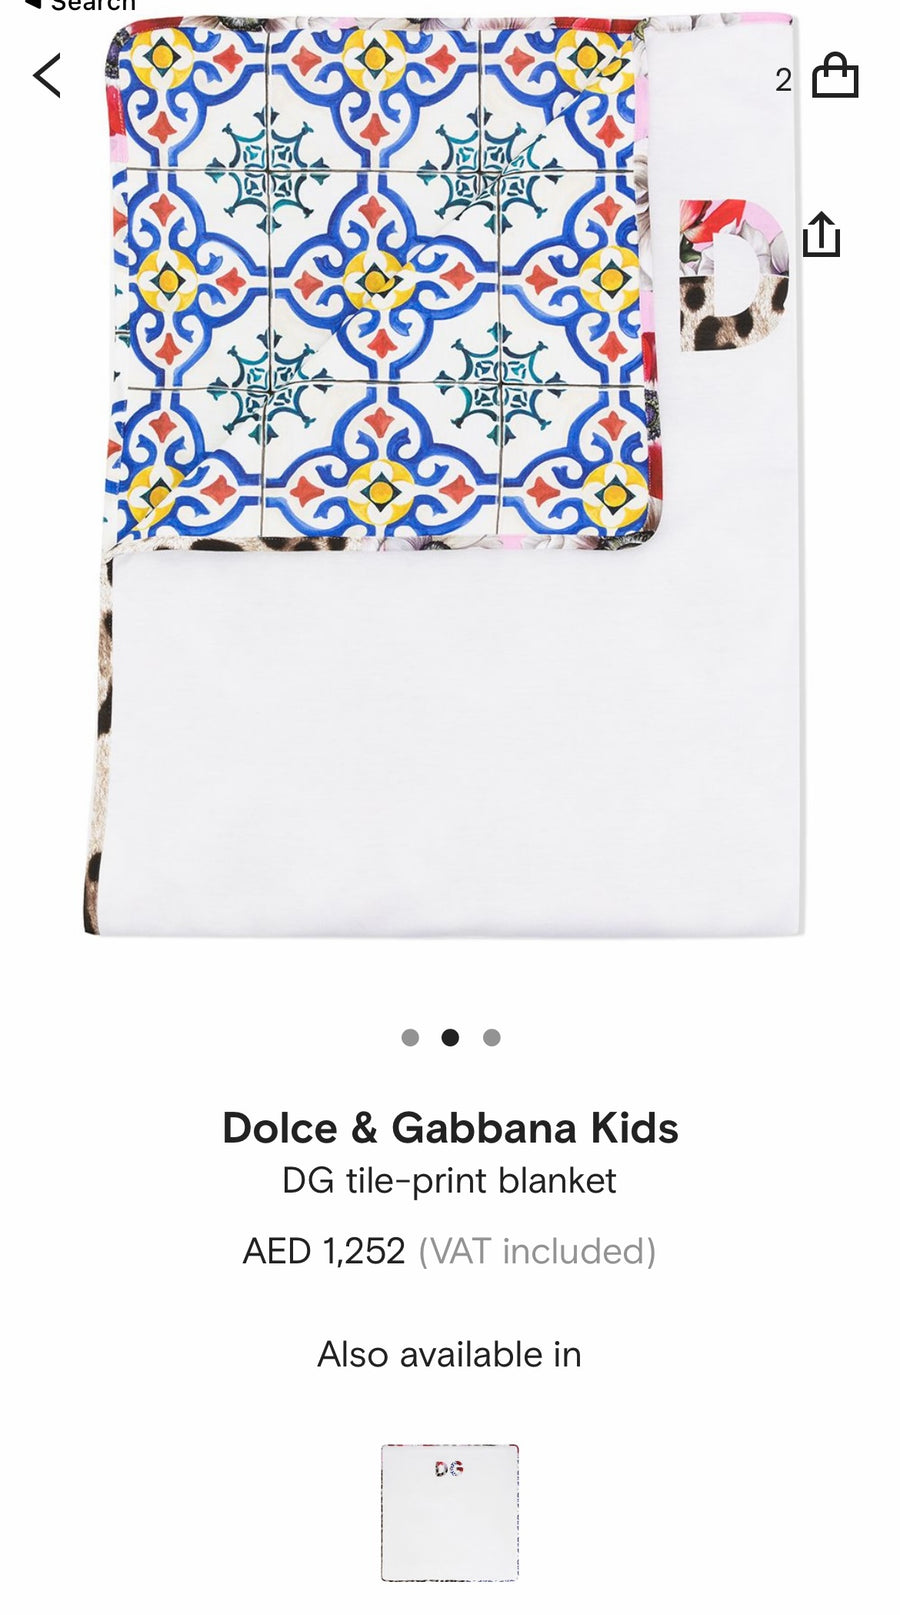 Dolce & Gabbana Kids DG tile-print blanket